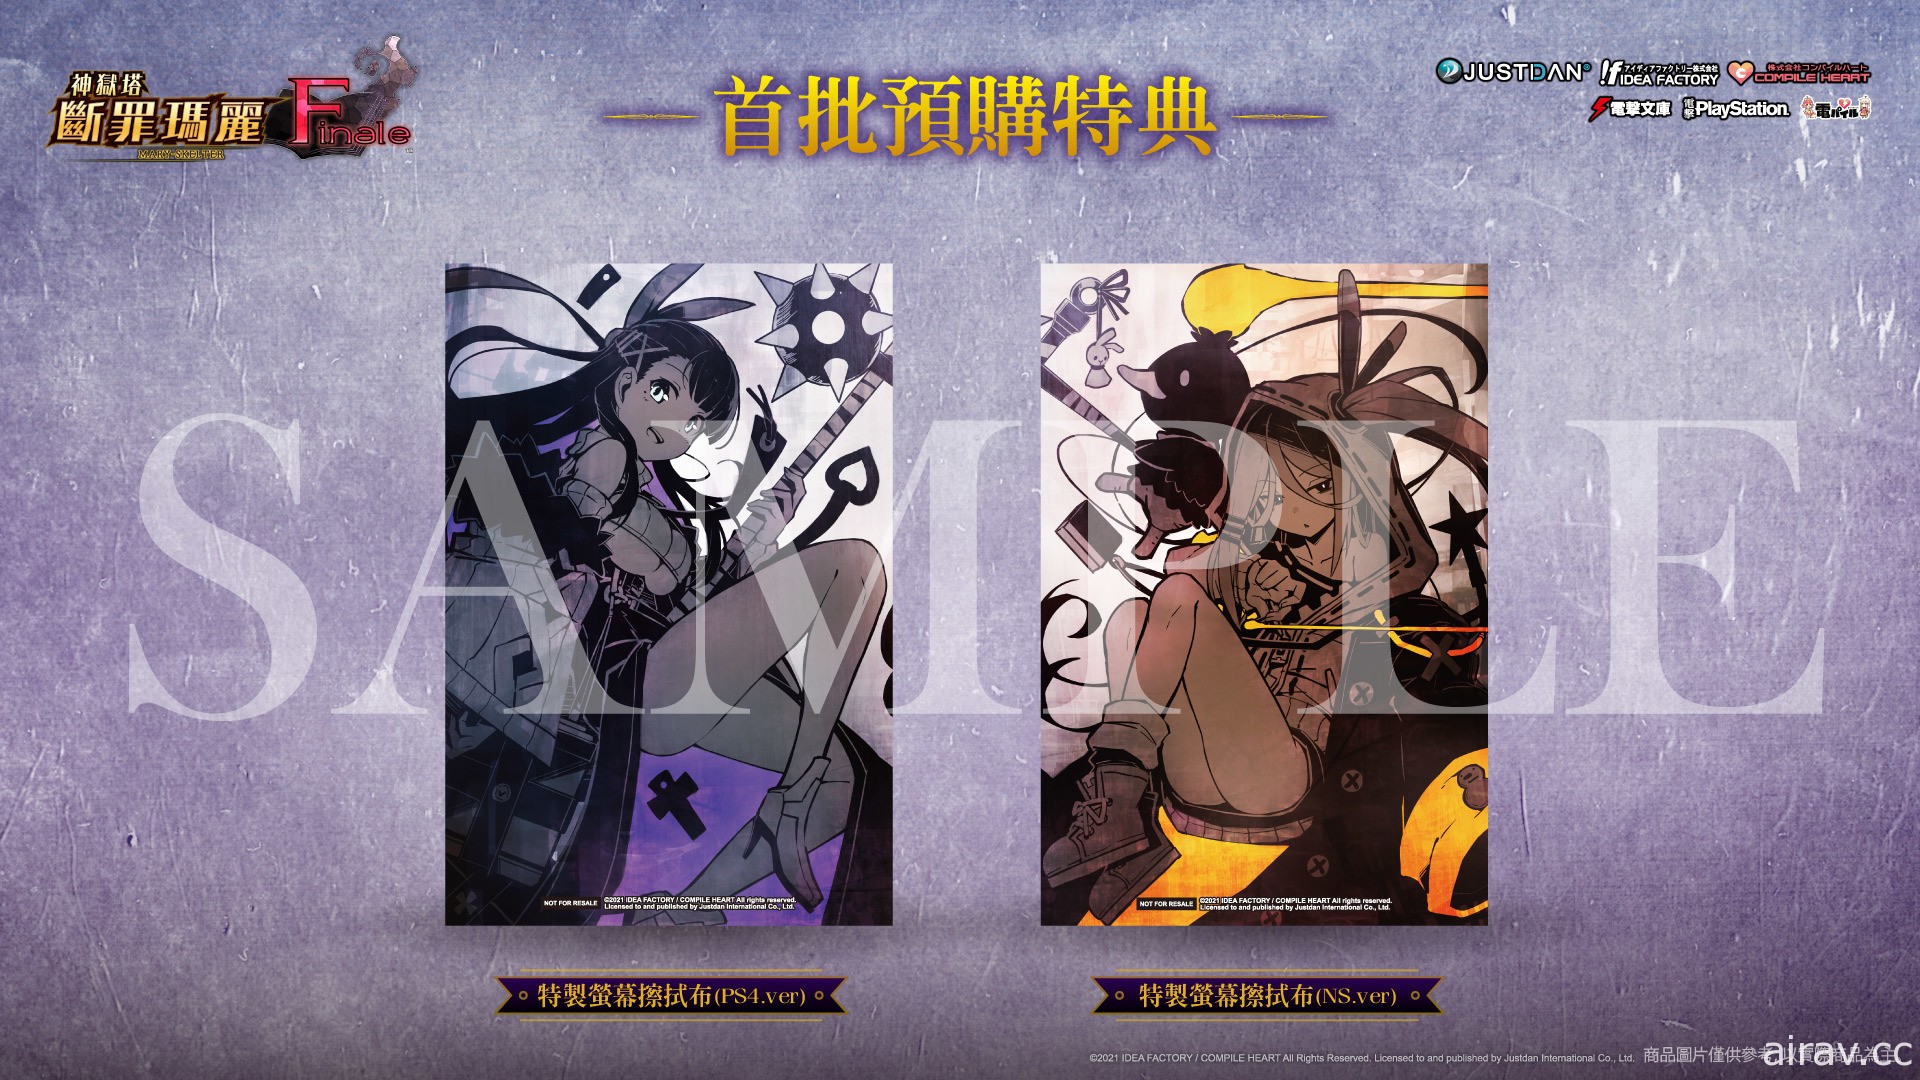 《神狱塔 断罪玛丽 Finale》中文版 7 月 22 日发售 预约特典及限定版资讯揭晓